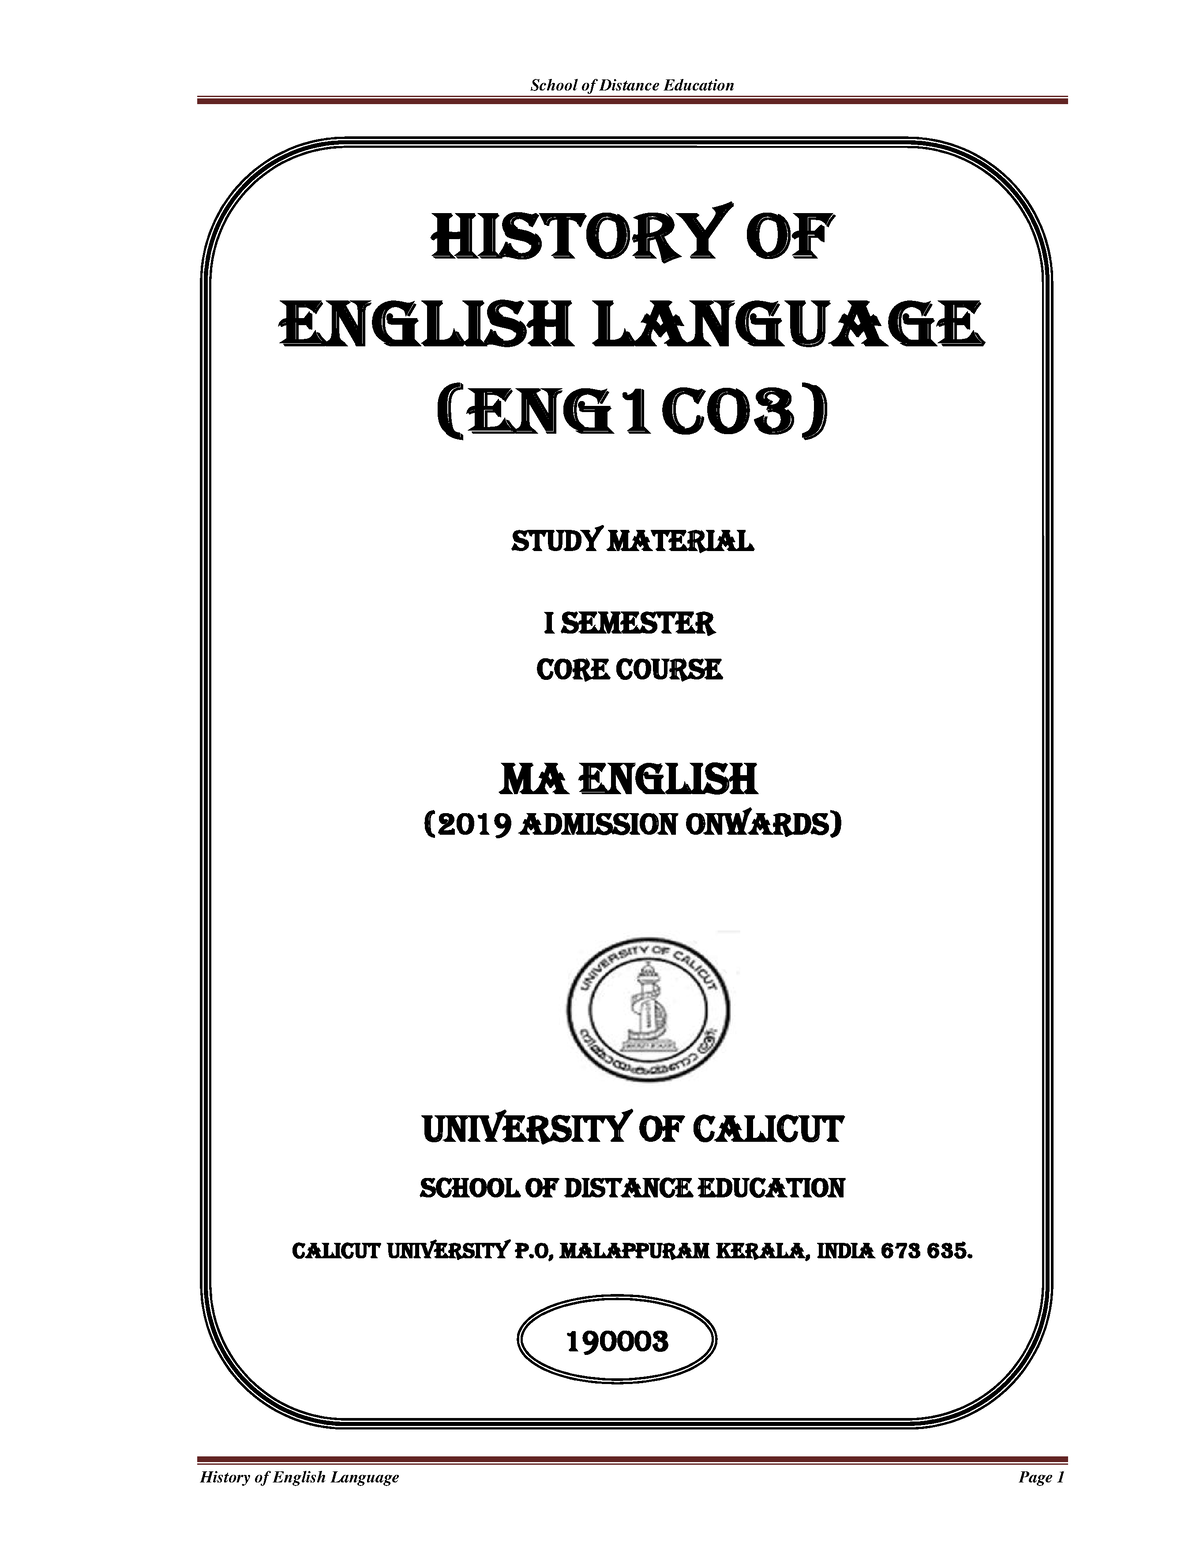 history-of-english-language-0-history-of-english-language-eng-1-c-03